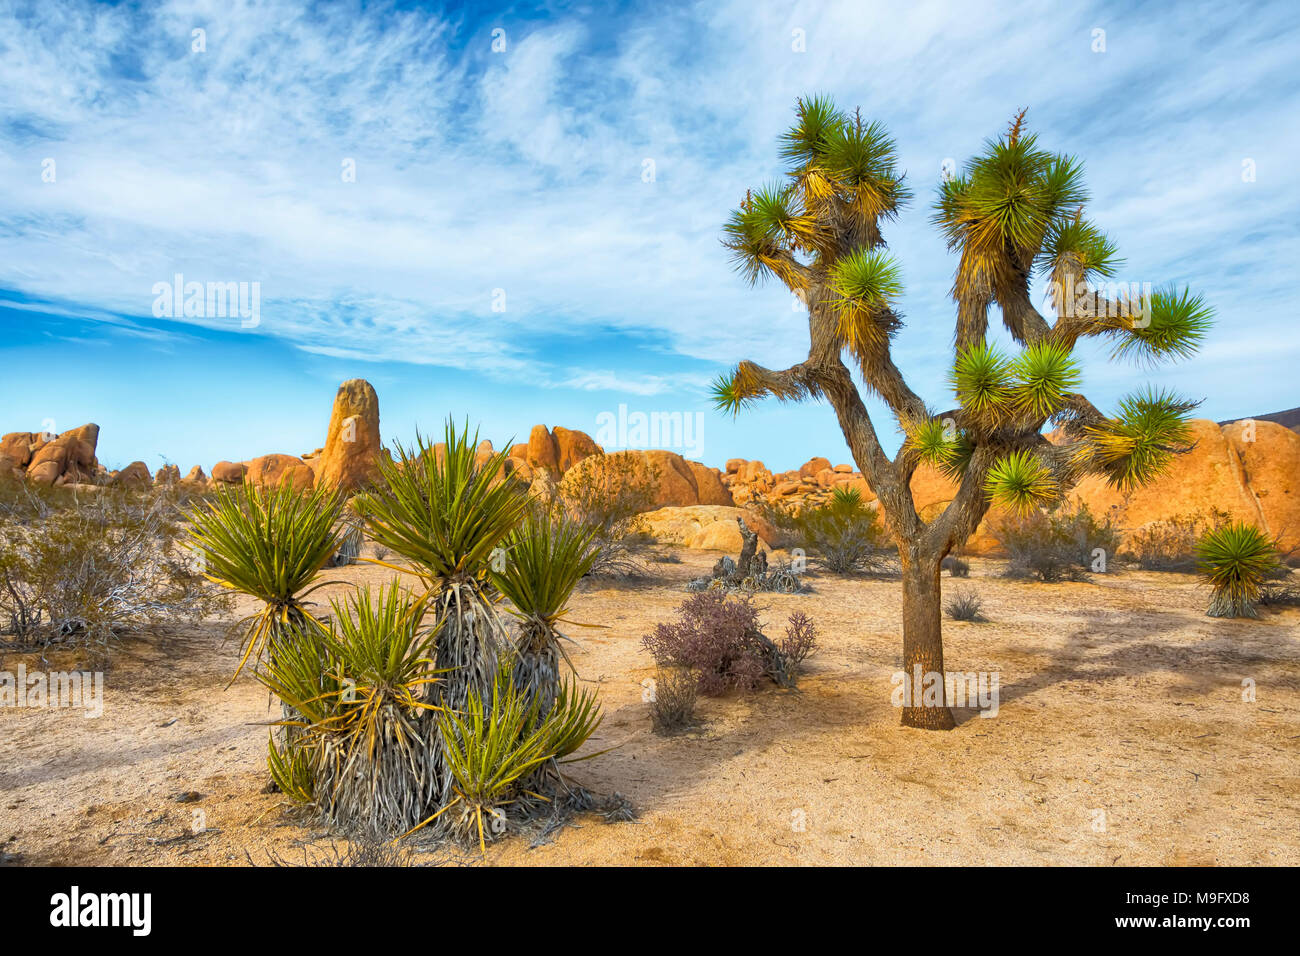 Joshua Tree, Yucca brevifolia, nativa de las zonas áridas del suroeste de los Estados Unidos, la mayoría vive en el desierto de Mojave. La imagen está tomada en Joshua Tree National Foto de stock